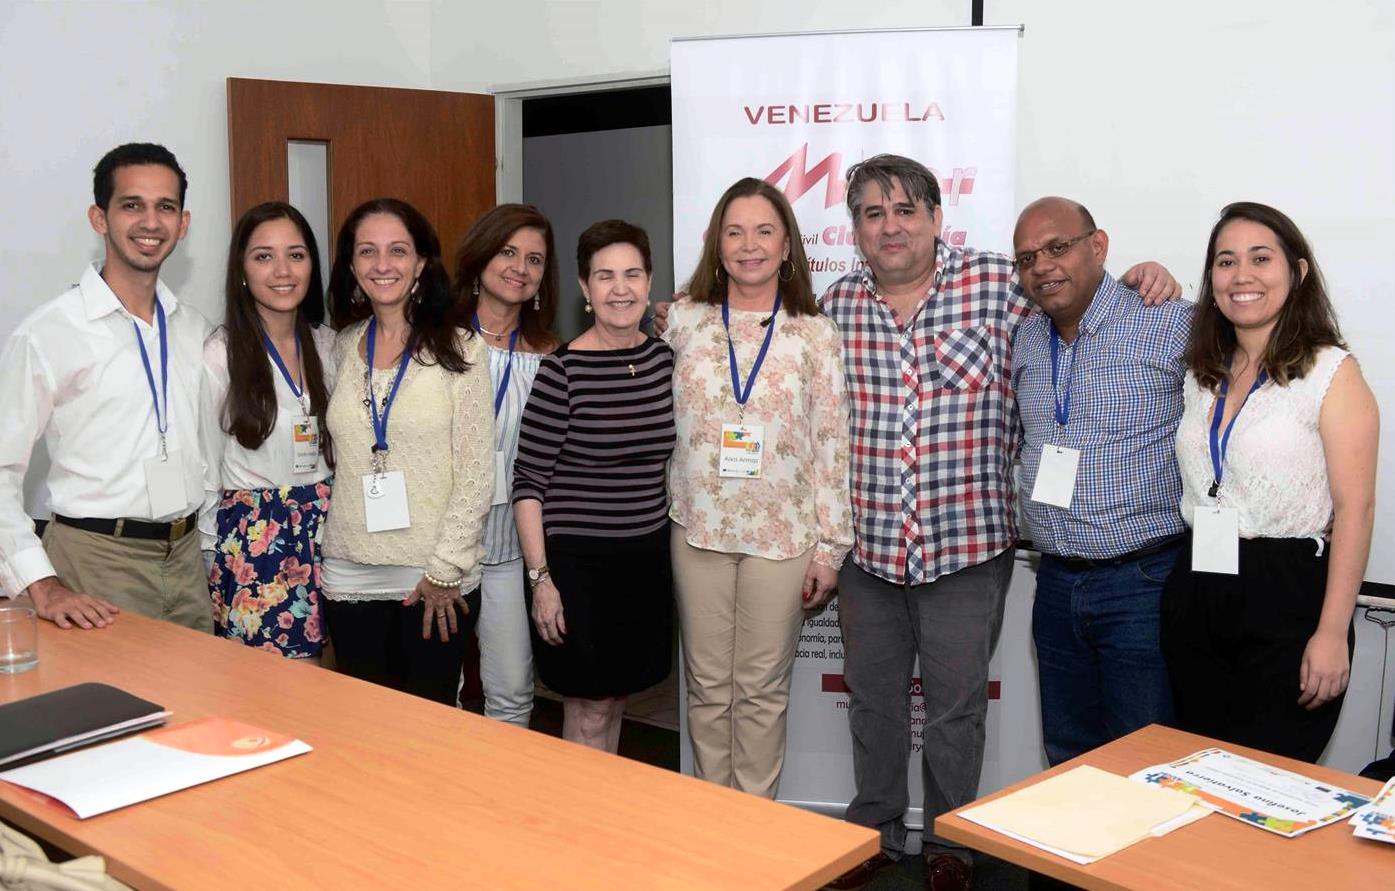 Mujer Y Ciudadanía A.c, People In Need, Oportunidad Y La Universidad Monteávila Realizaron El Primer Seminario Para Mujeres En Posiciones Claves En El Nacional